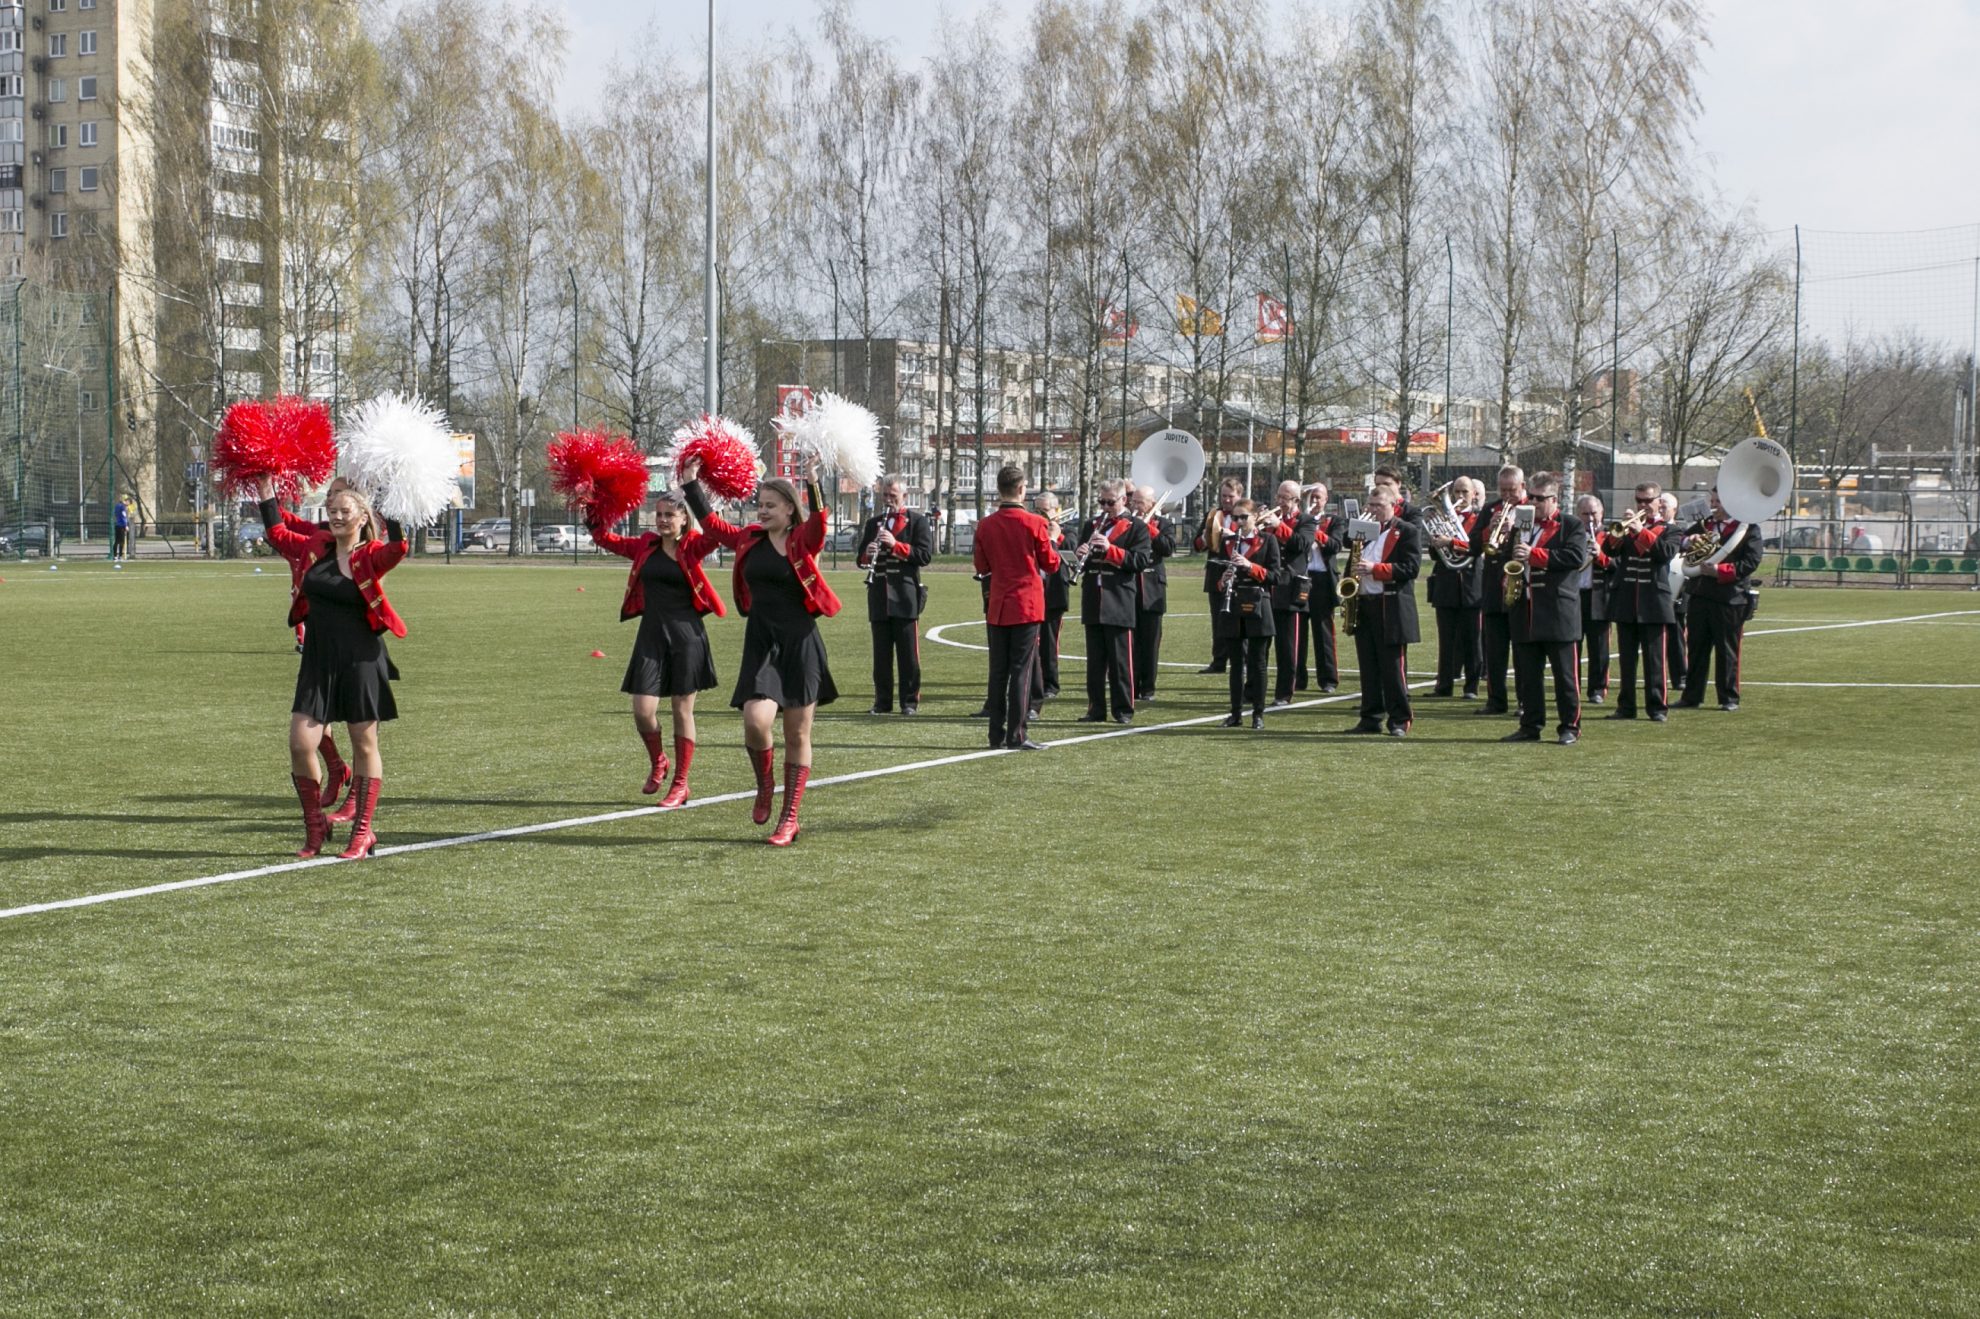 Panevėžio miesto savivaldybės taryba patvirtino naujojo „Žemynos“ progimnazijos dirbtinės dangos futbolo stadiono teikiamų paslaugų kainas.